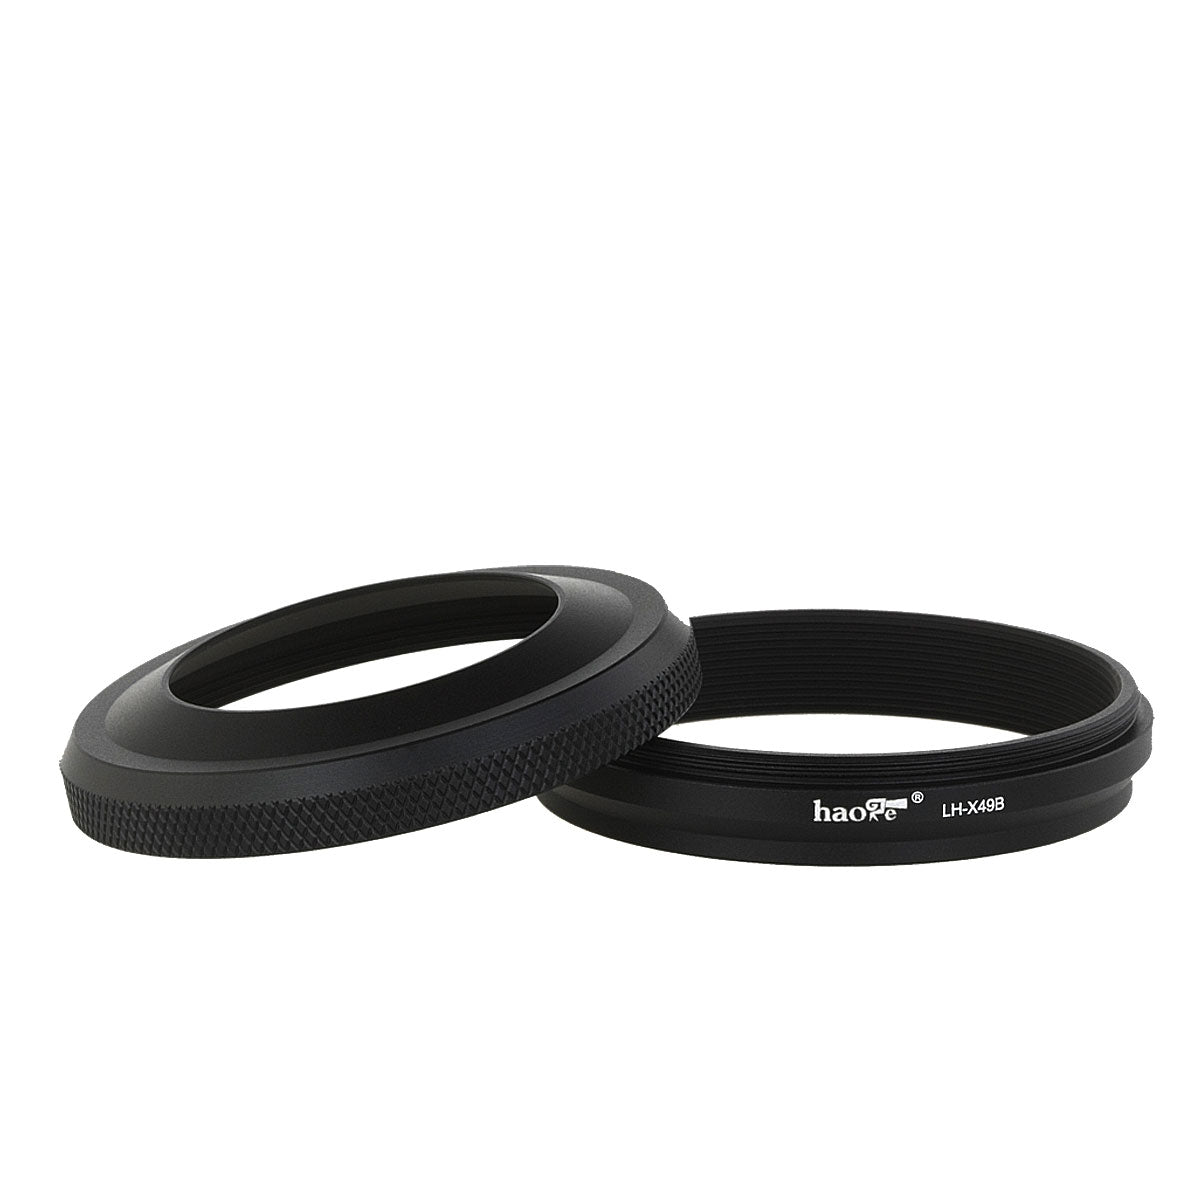 Haoge LH-X49B 2in1 All Metal Lens Hood with Adapter Ring Set for Fuji Fujifilm FinePix X100 X100S X100T X100F X70 Black